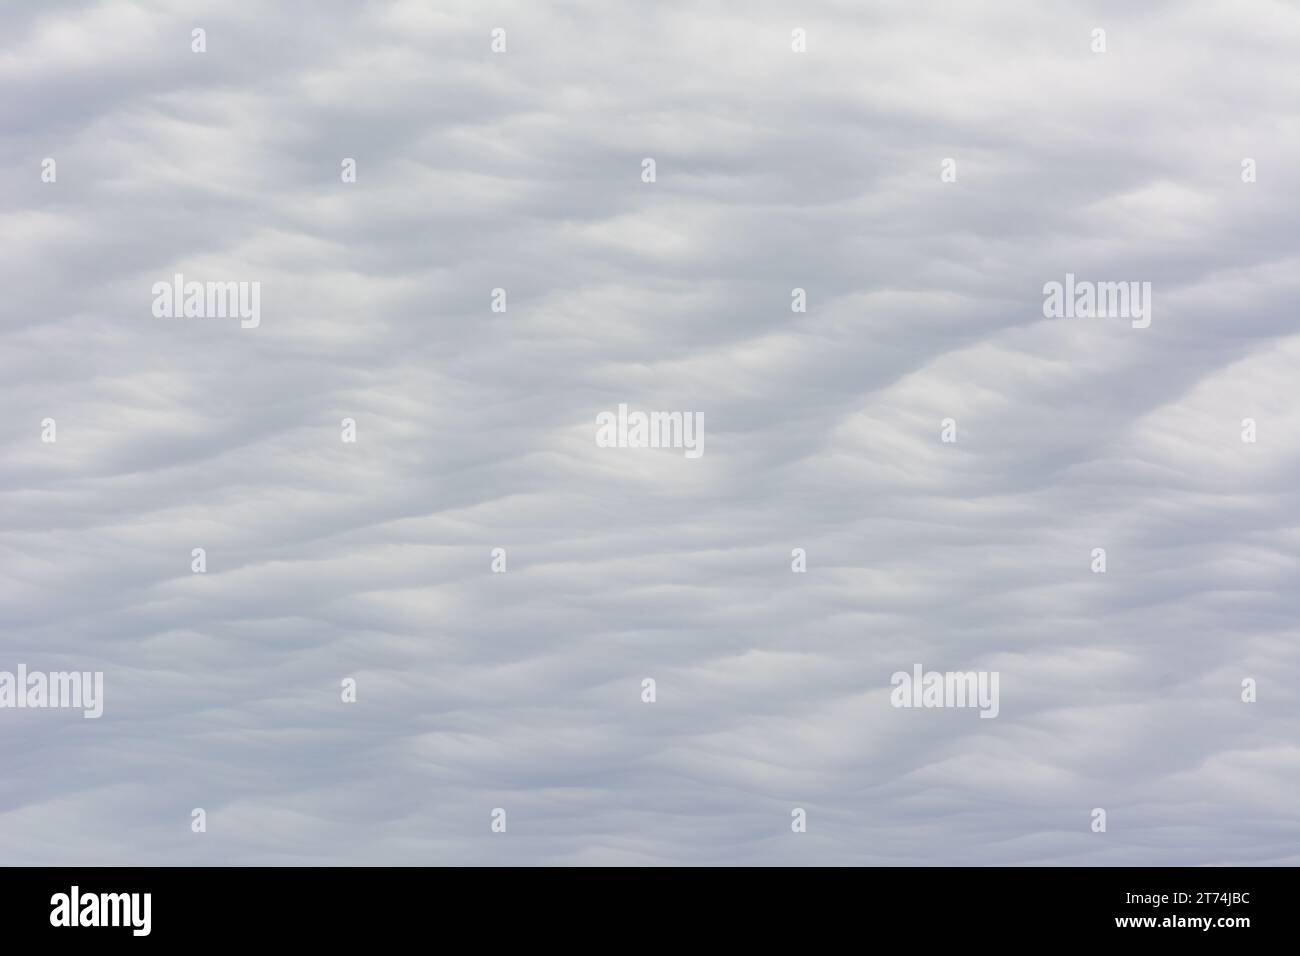 Texture nuvola astratta con un motivo ondulato e dune di sabbia. Foto Stock